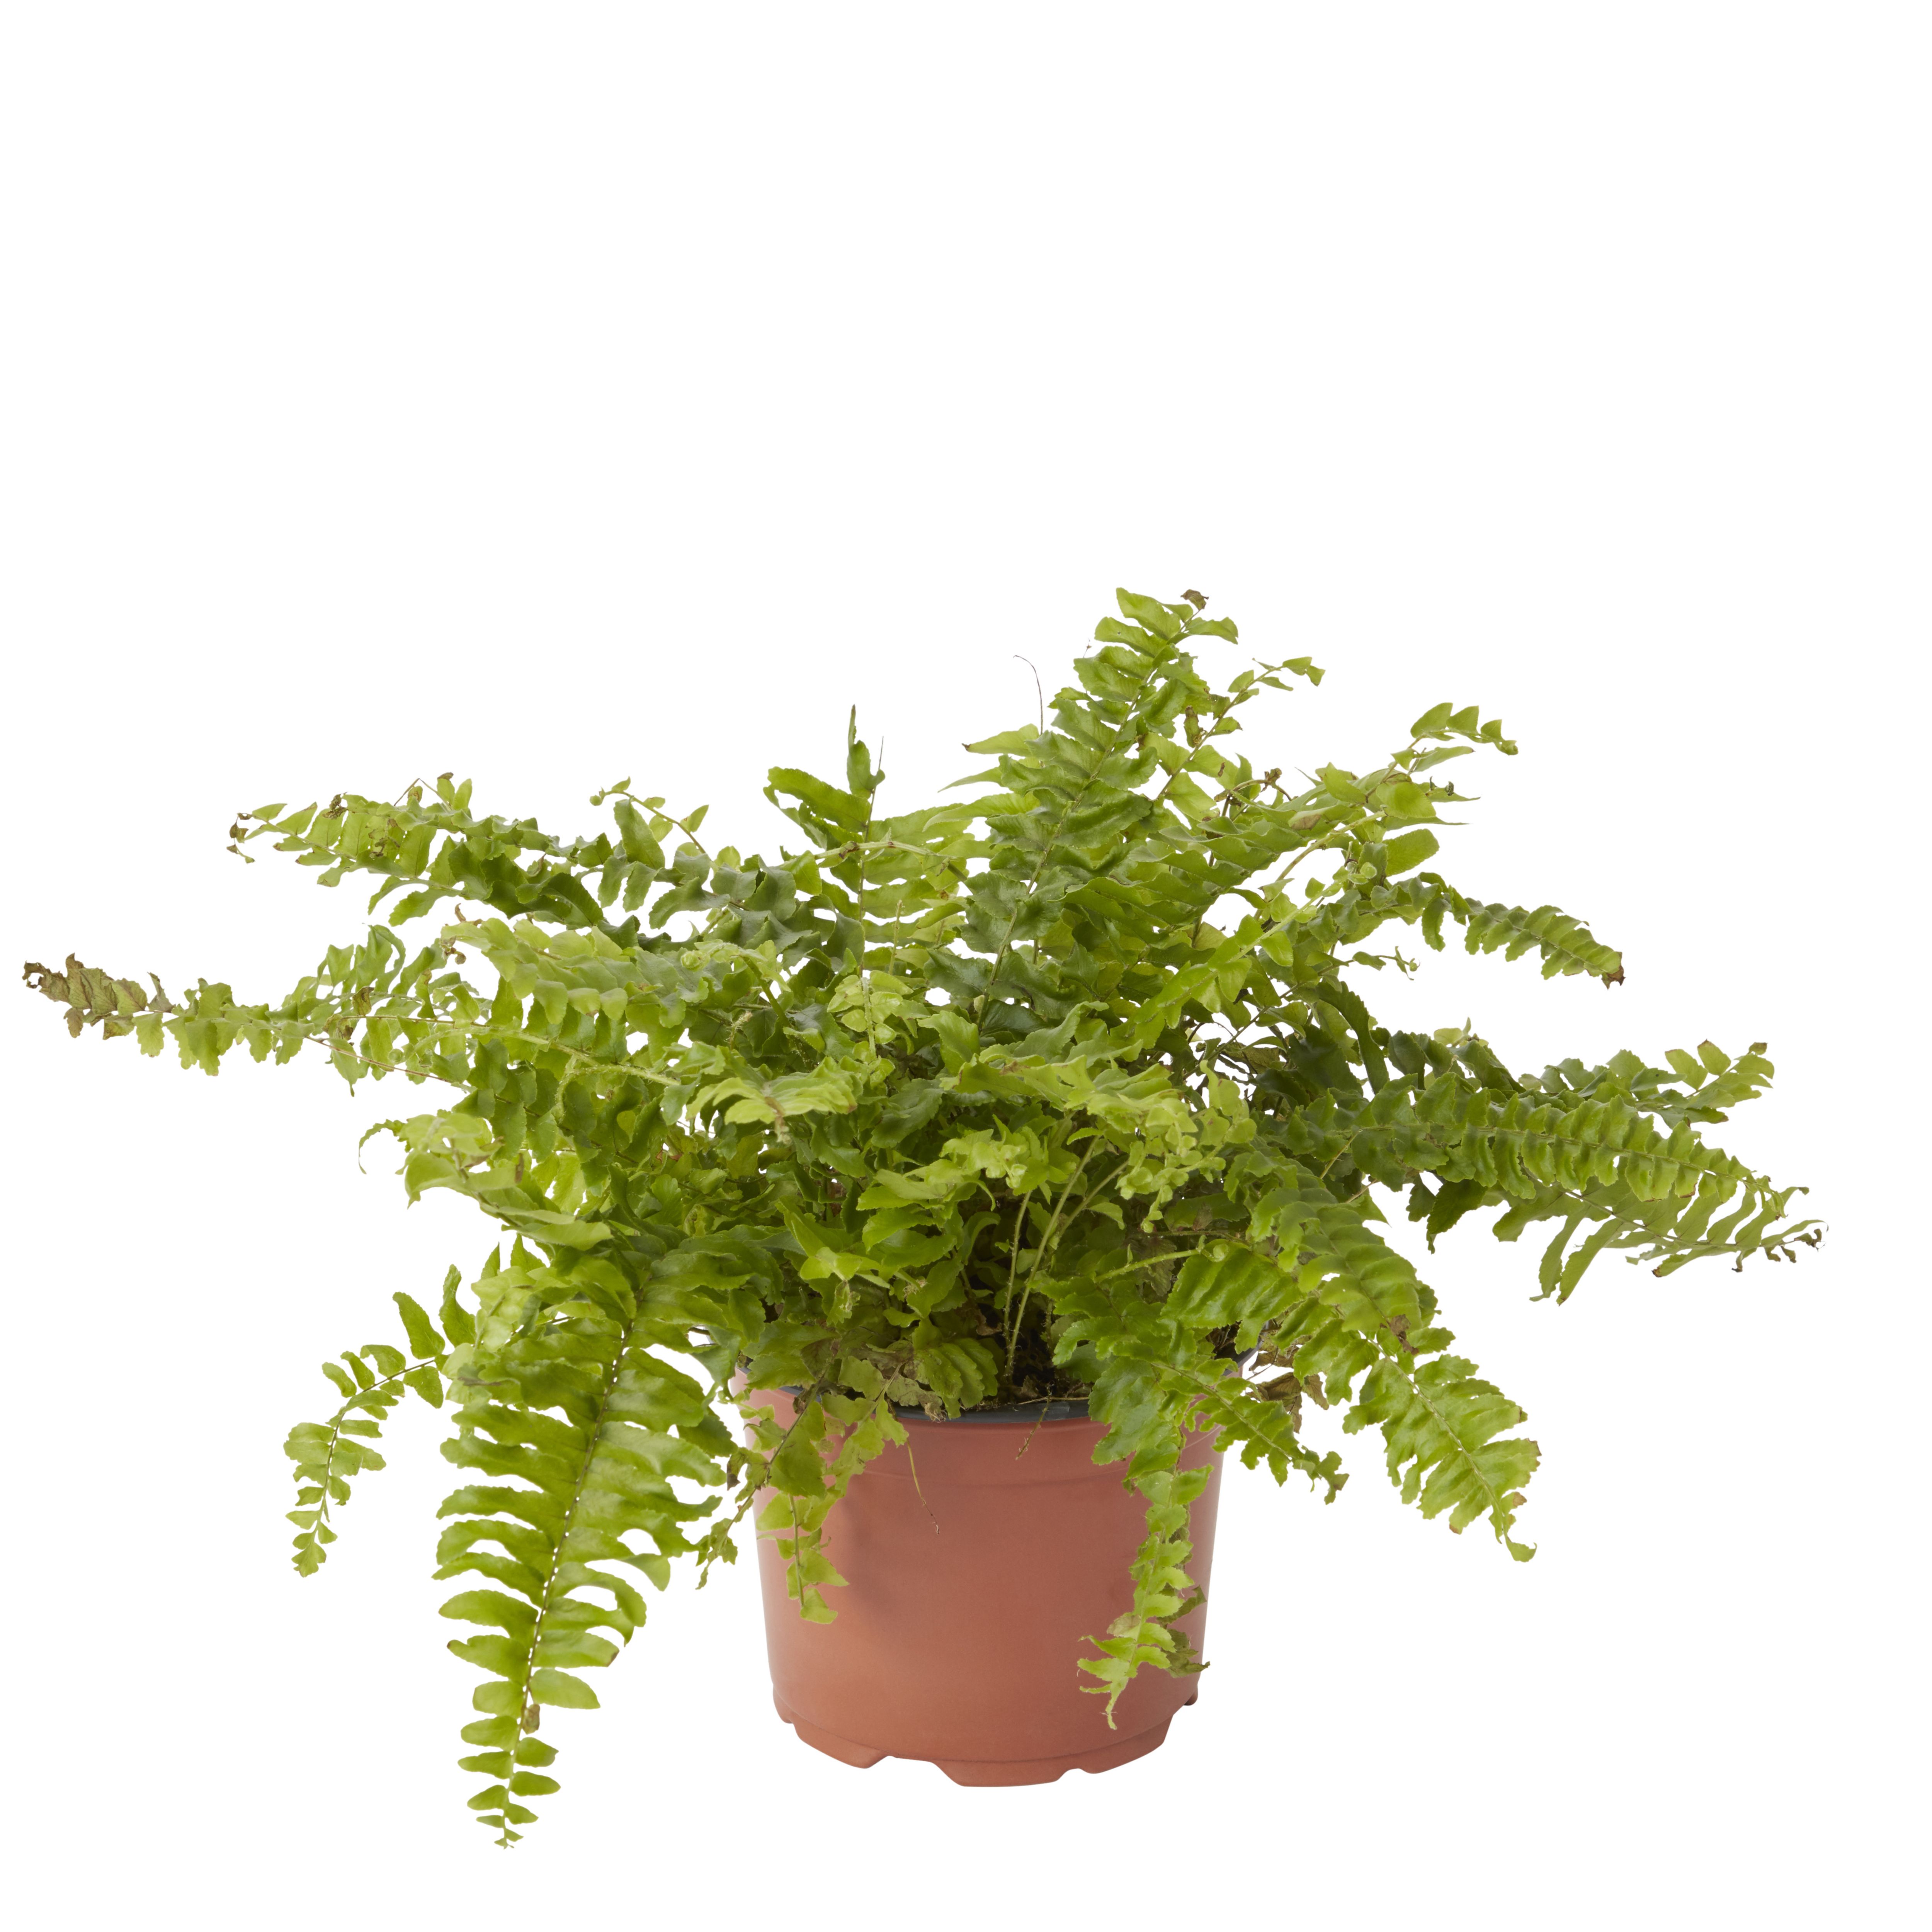 Verve Fern Foliage plant Plastic Grow pot 12cm